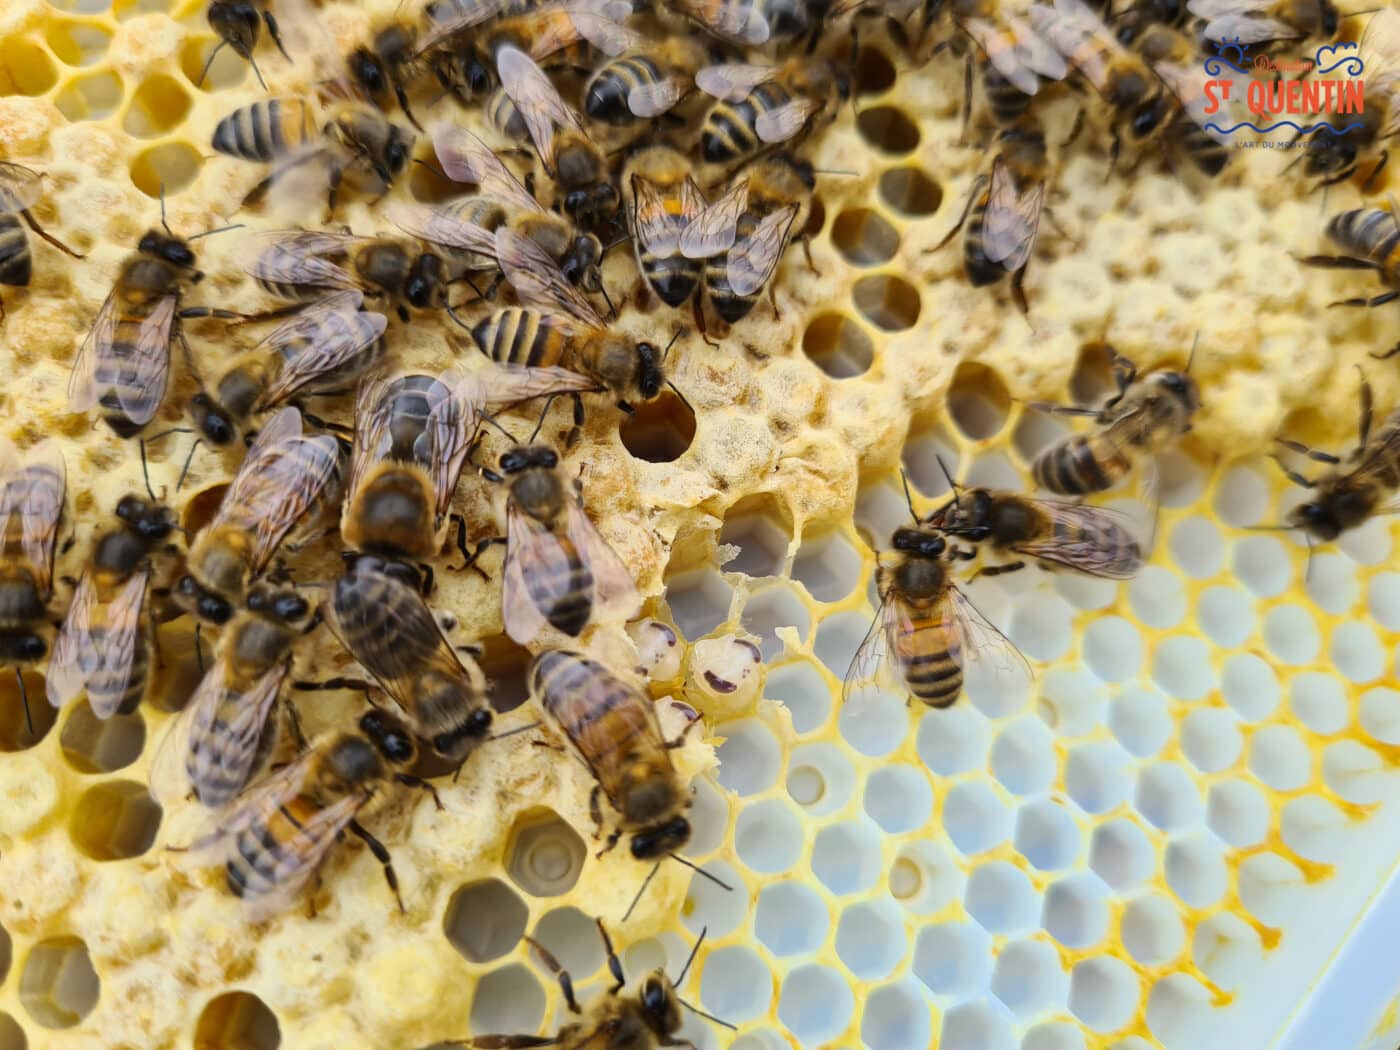 ambassadeur les abeilles de francilly 07 - Office de tourisme du Saint-Quentinois